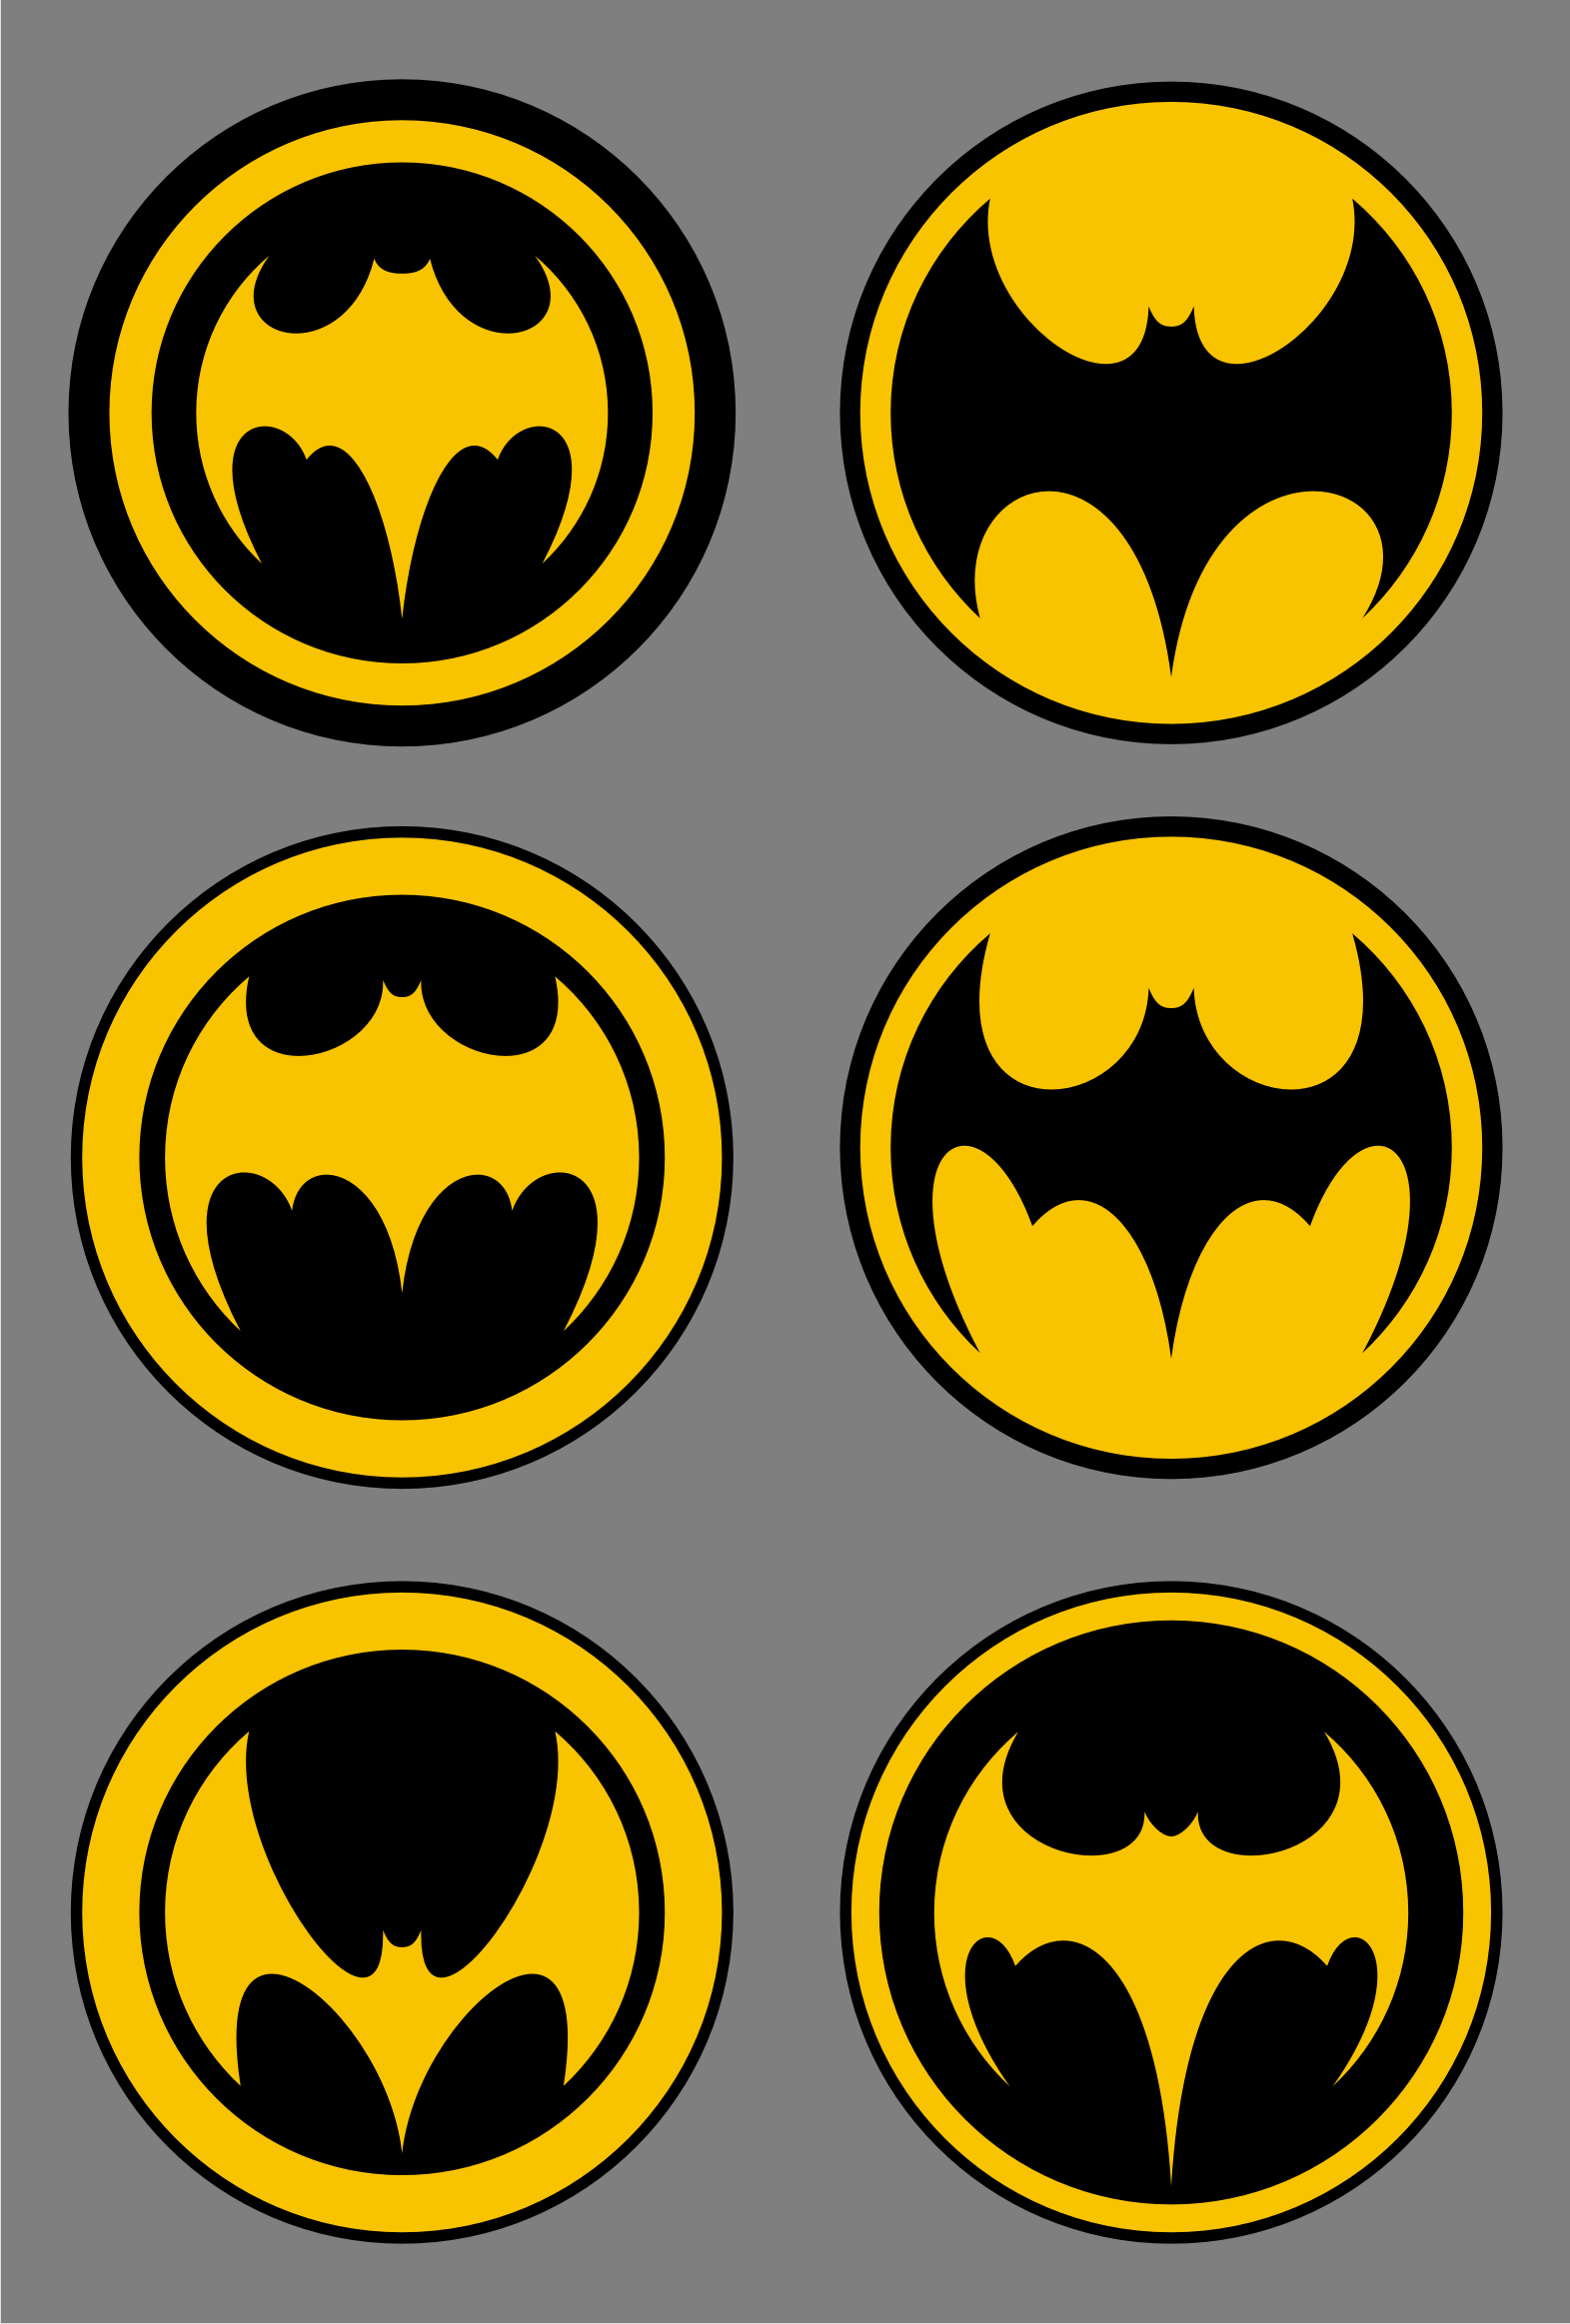 view-printable-batman-logo-pics-draw-collect